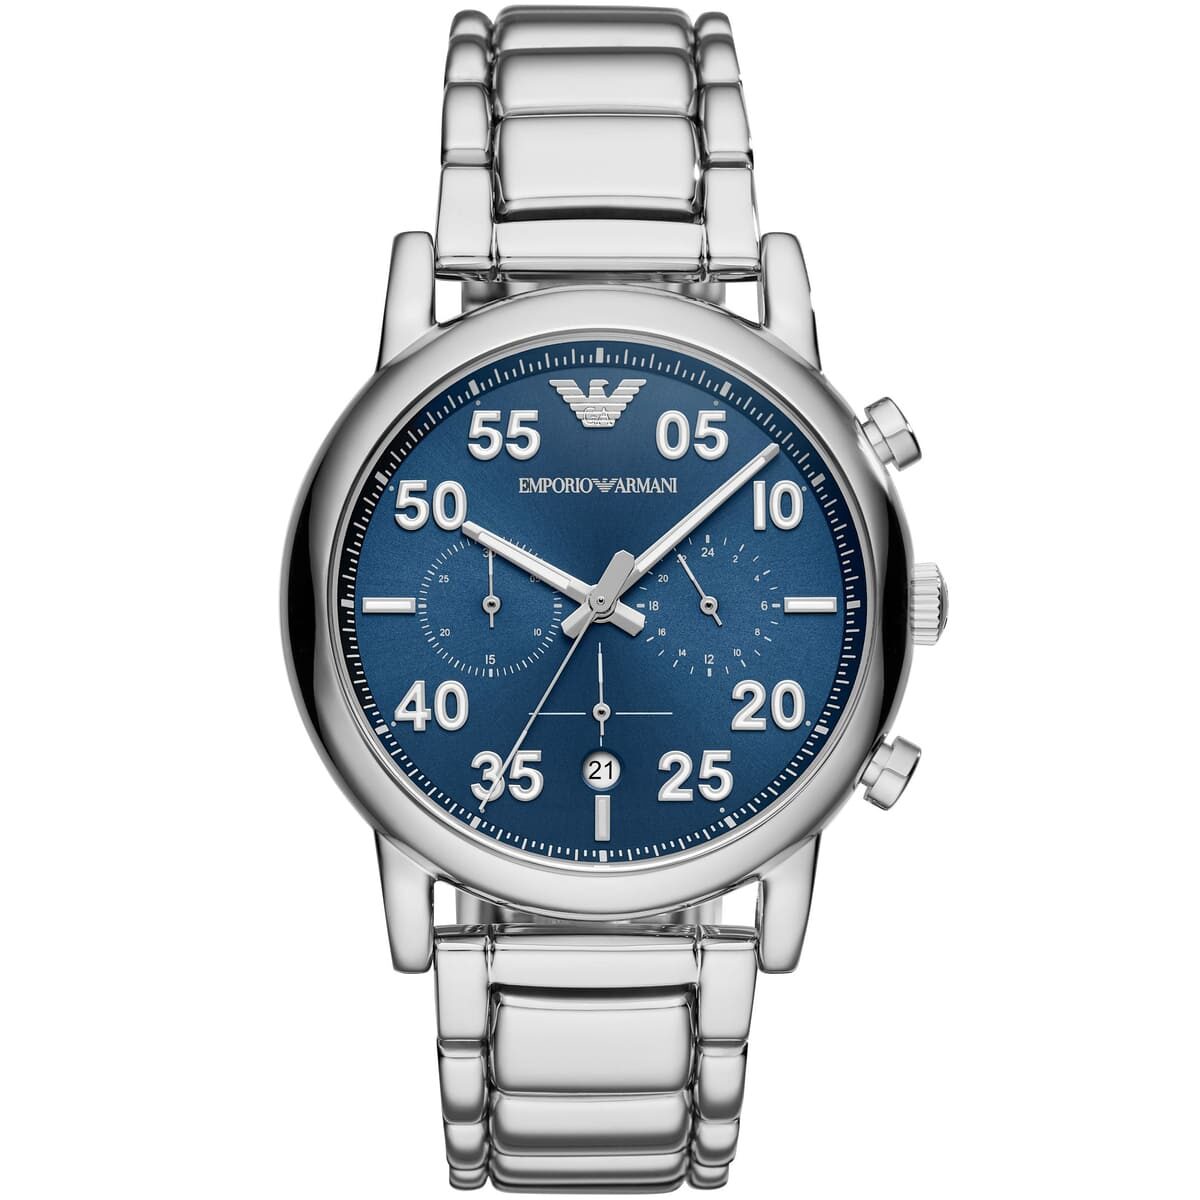 ar11132-emporio-armani-watch-men-blue-dial-stainless-steel-metal-silver-strap-quartz-analog-chronograph-luigi